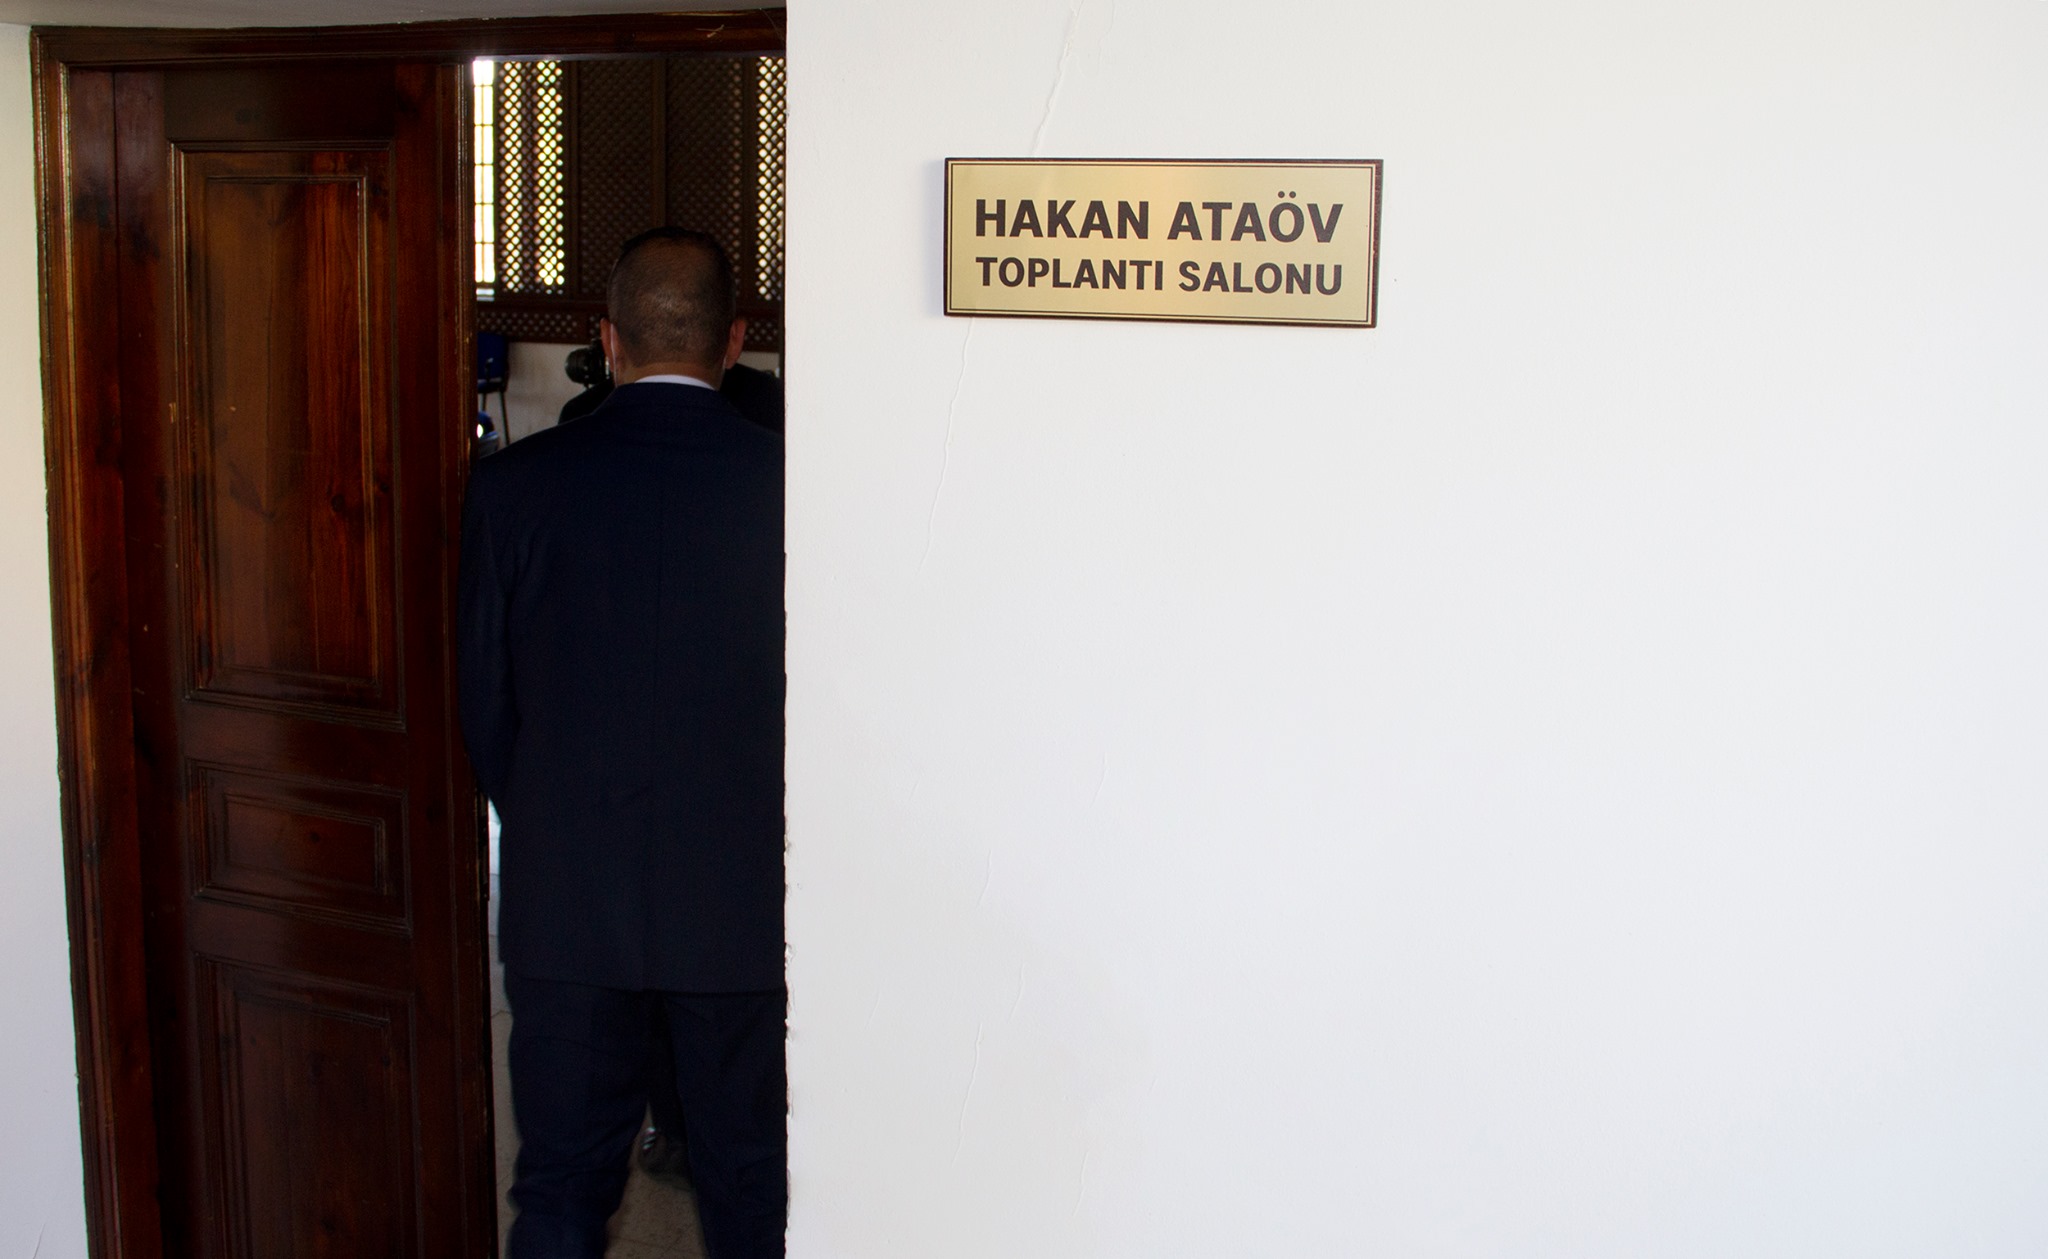 Merhum Hakan Ataöv’ün İsmi Turizm ve Çevre Bakanlığı Toplantı Salonuna Verildi